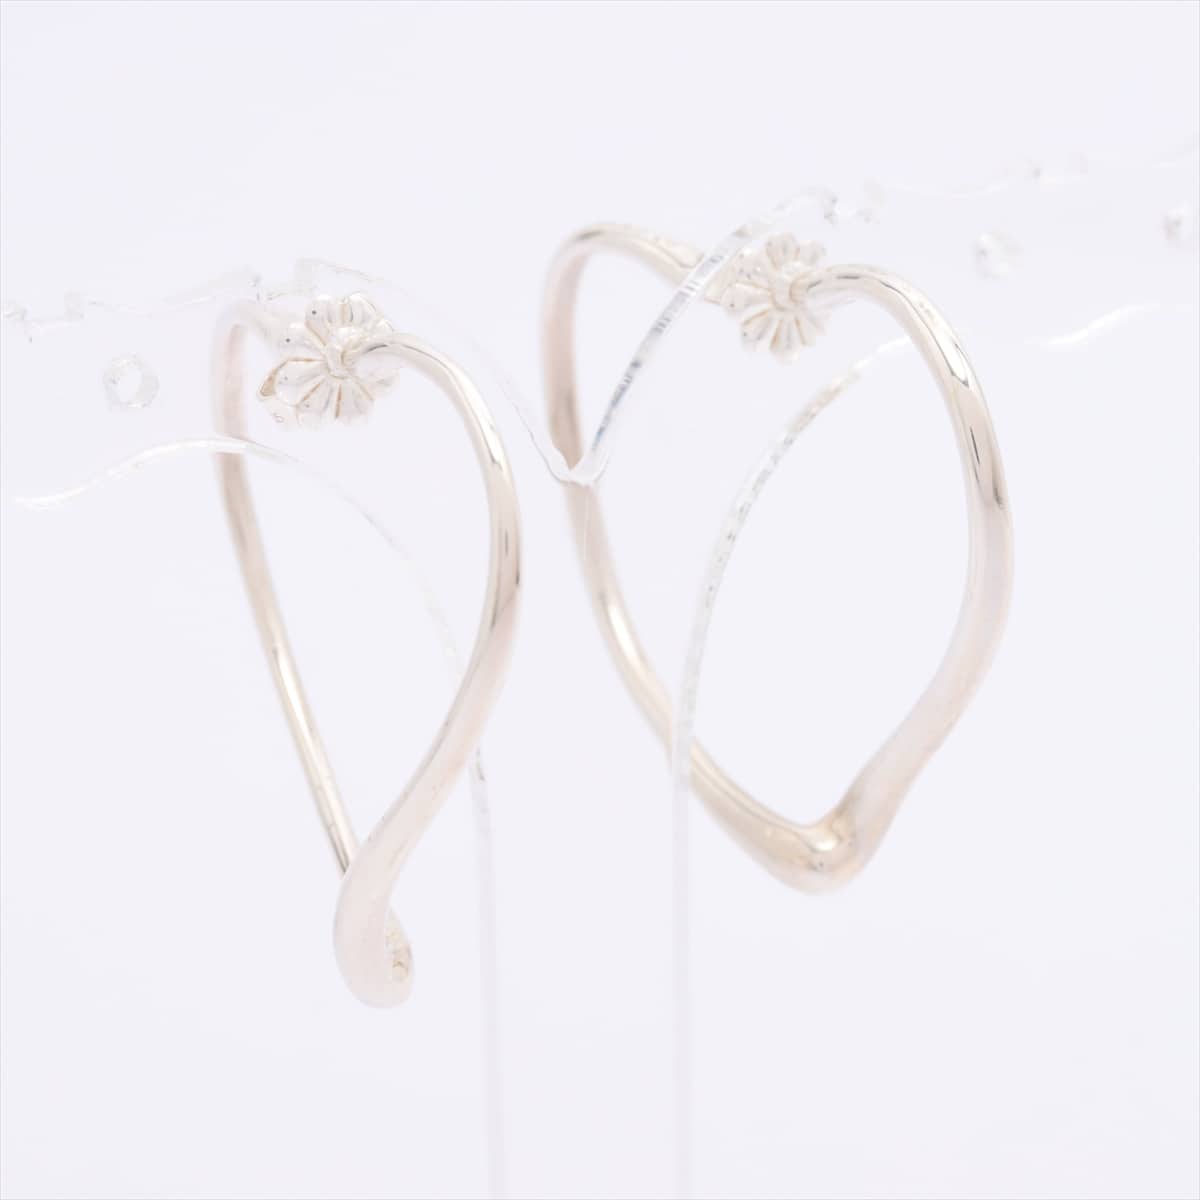 Tiffany Open Heart Piercing jewelry (for both ears) 925 5.9g Silver